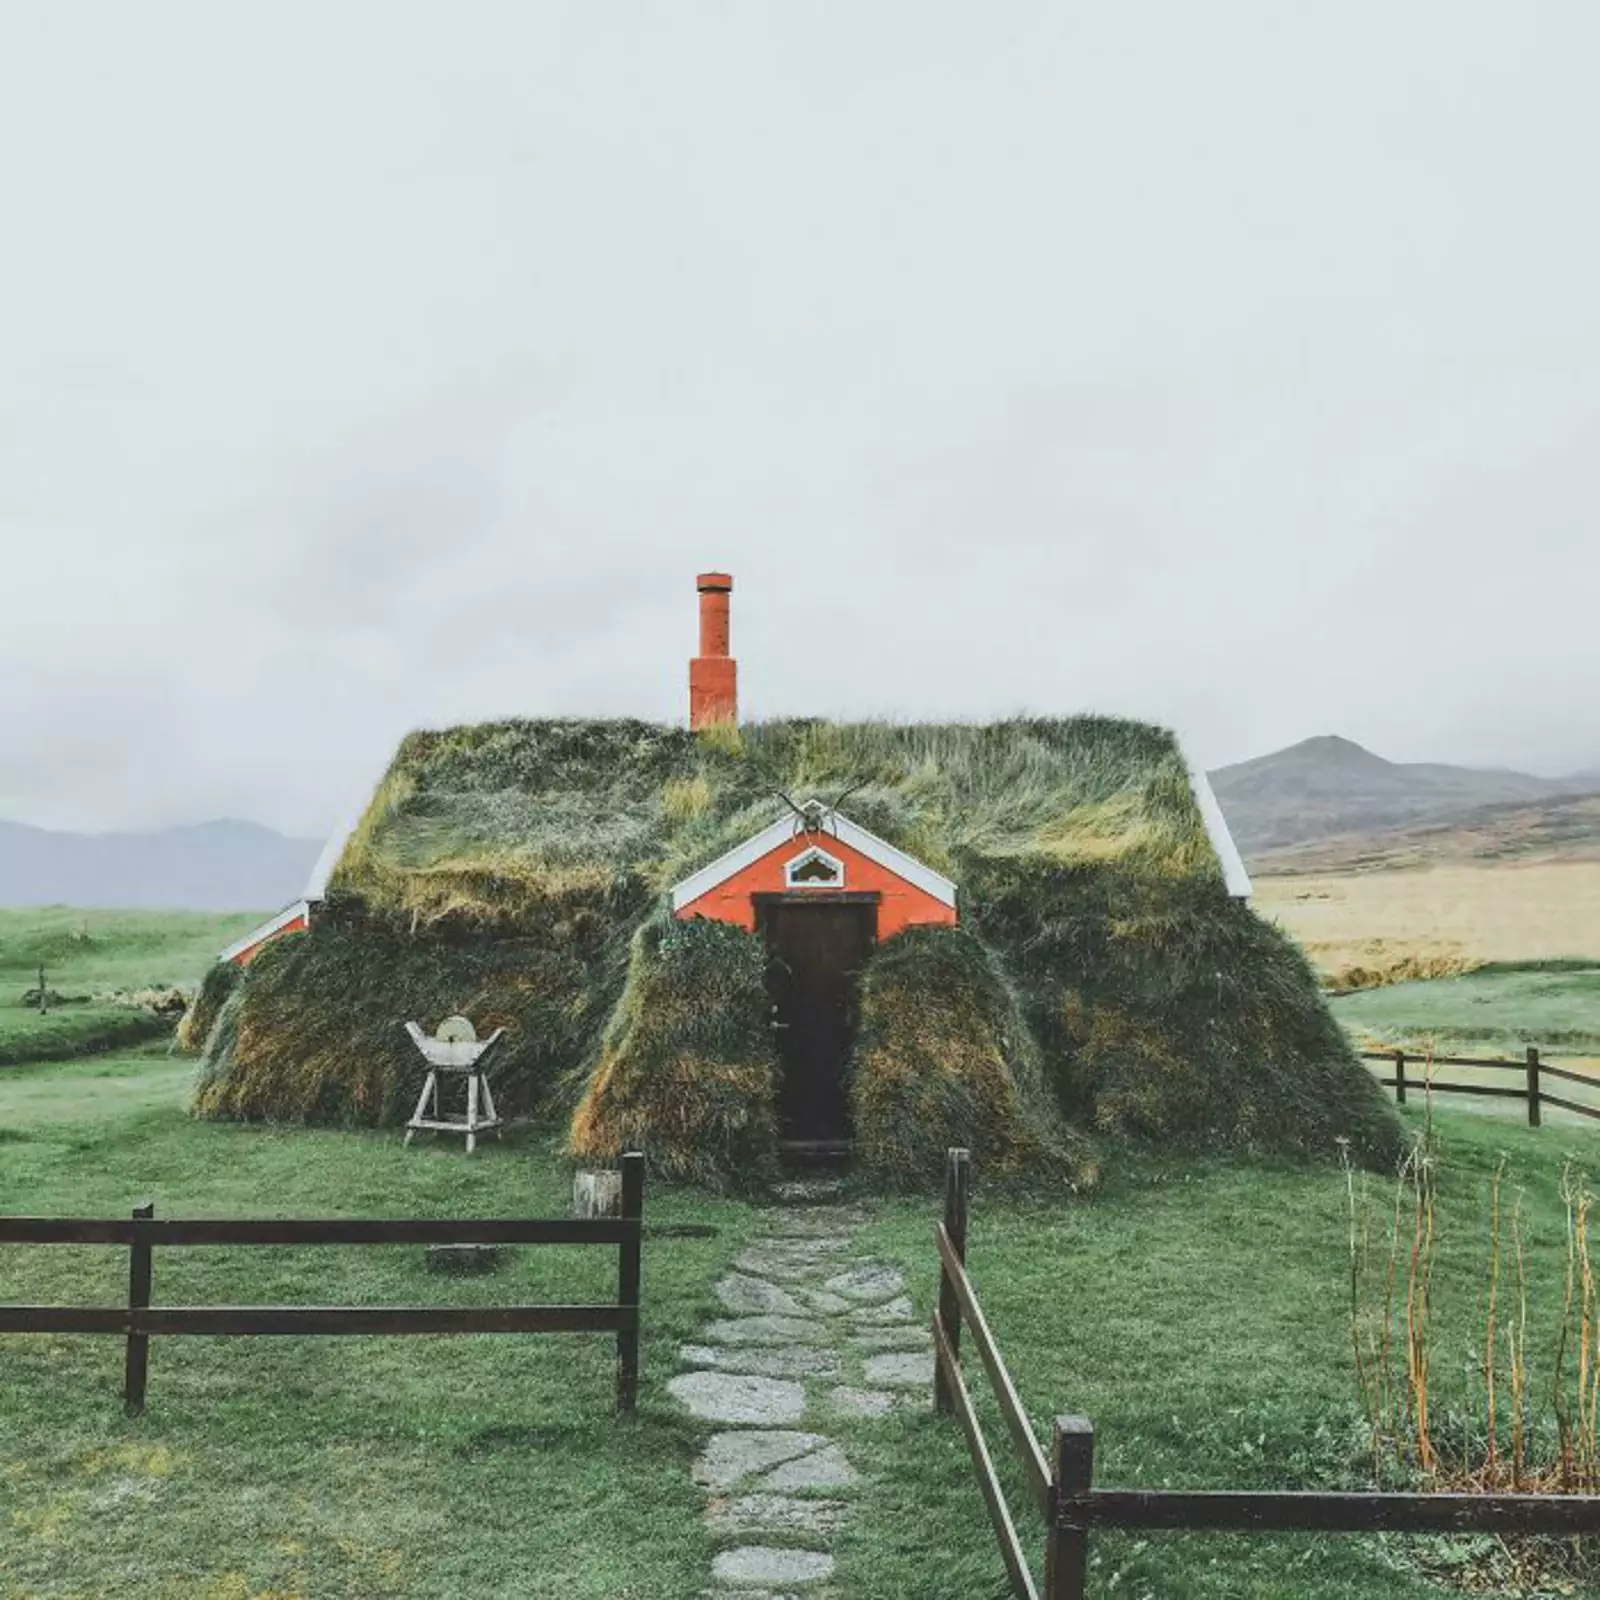 “Cамый крутой дом, который я обнаружил во время поездки в Исландию».